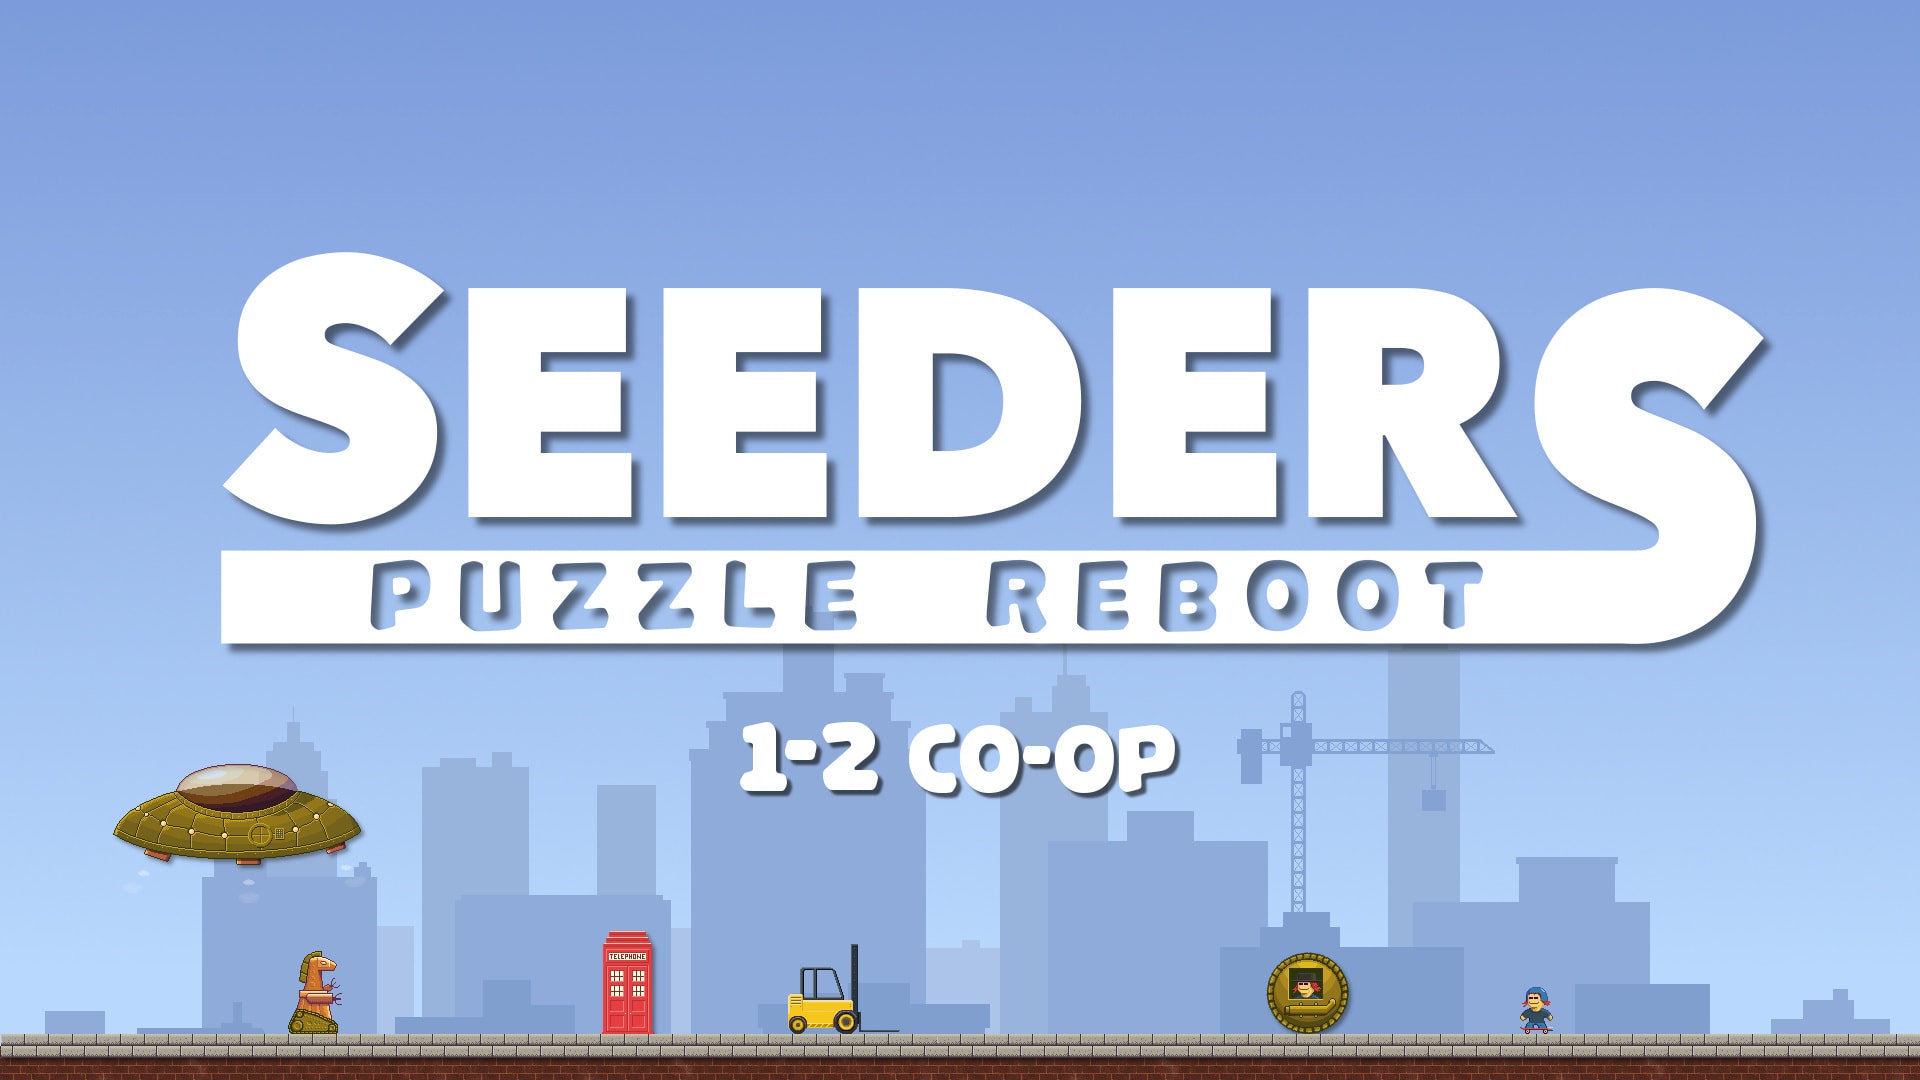 Seeders Puzzle Reboot